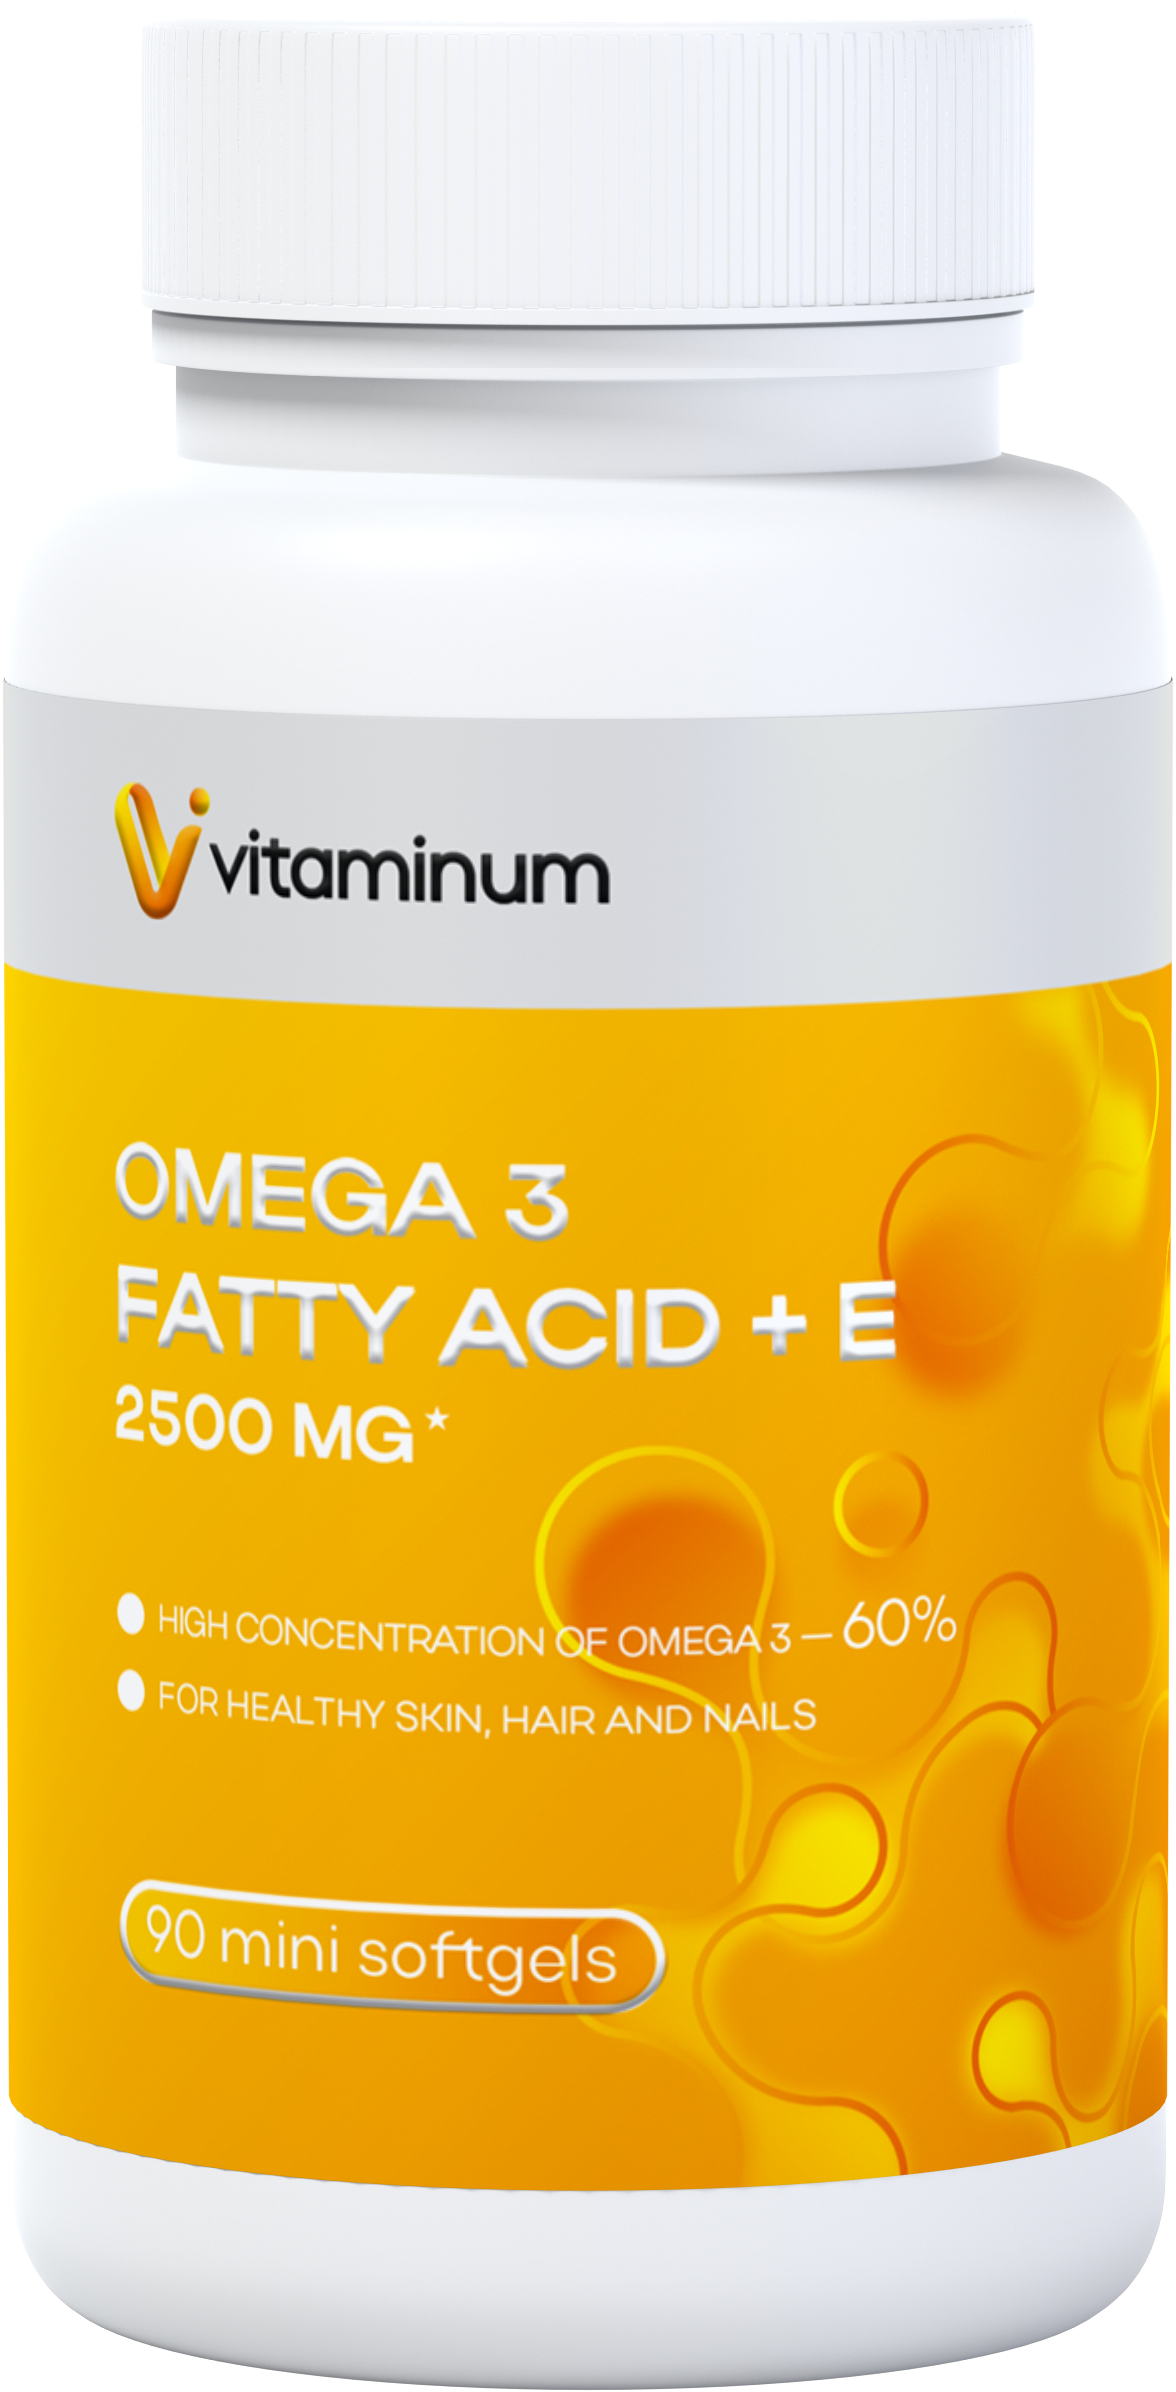  Vitaminum ОМЕГА 3 60% + витамин Е (2500 MG*) 90 капсул 700 мг   в Октябрьском